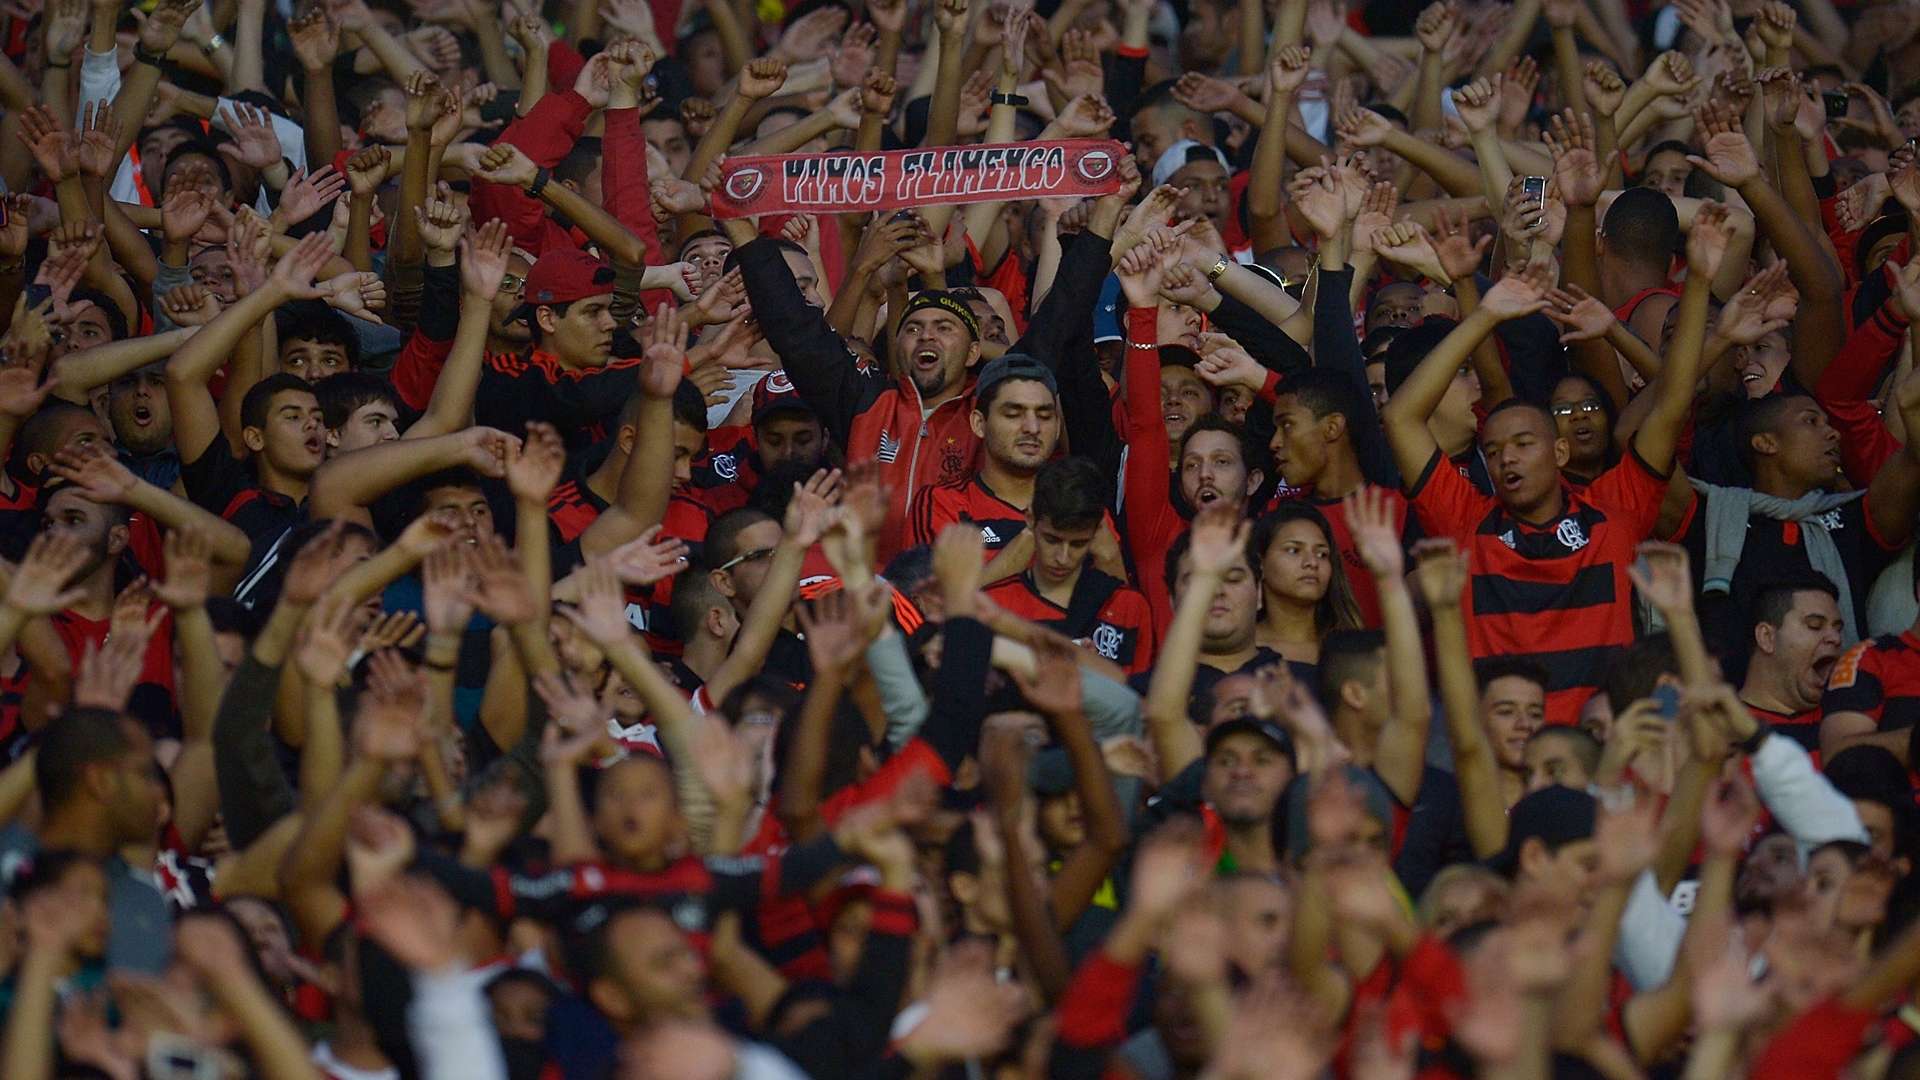 Torcida Flamengo Maracanã 27 07 2014